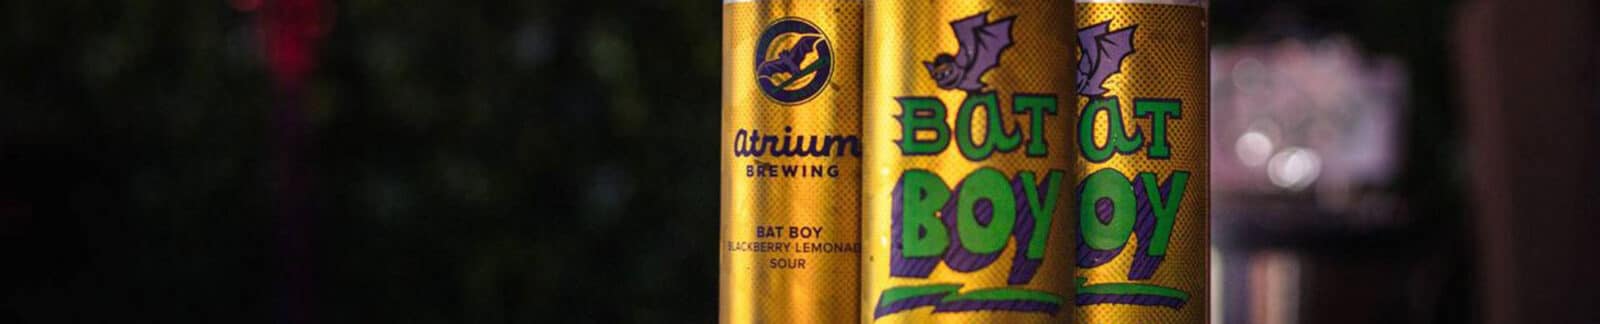 Atrium Brewing – Bat Boy Sour Beer header